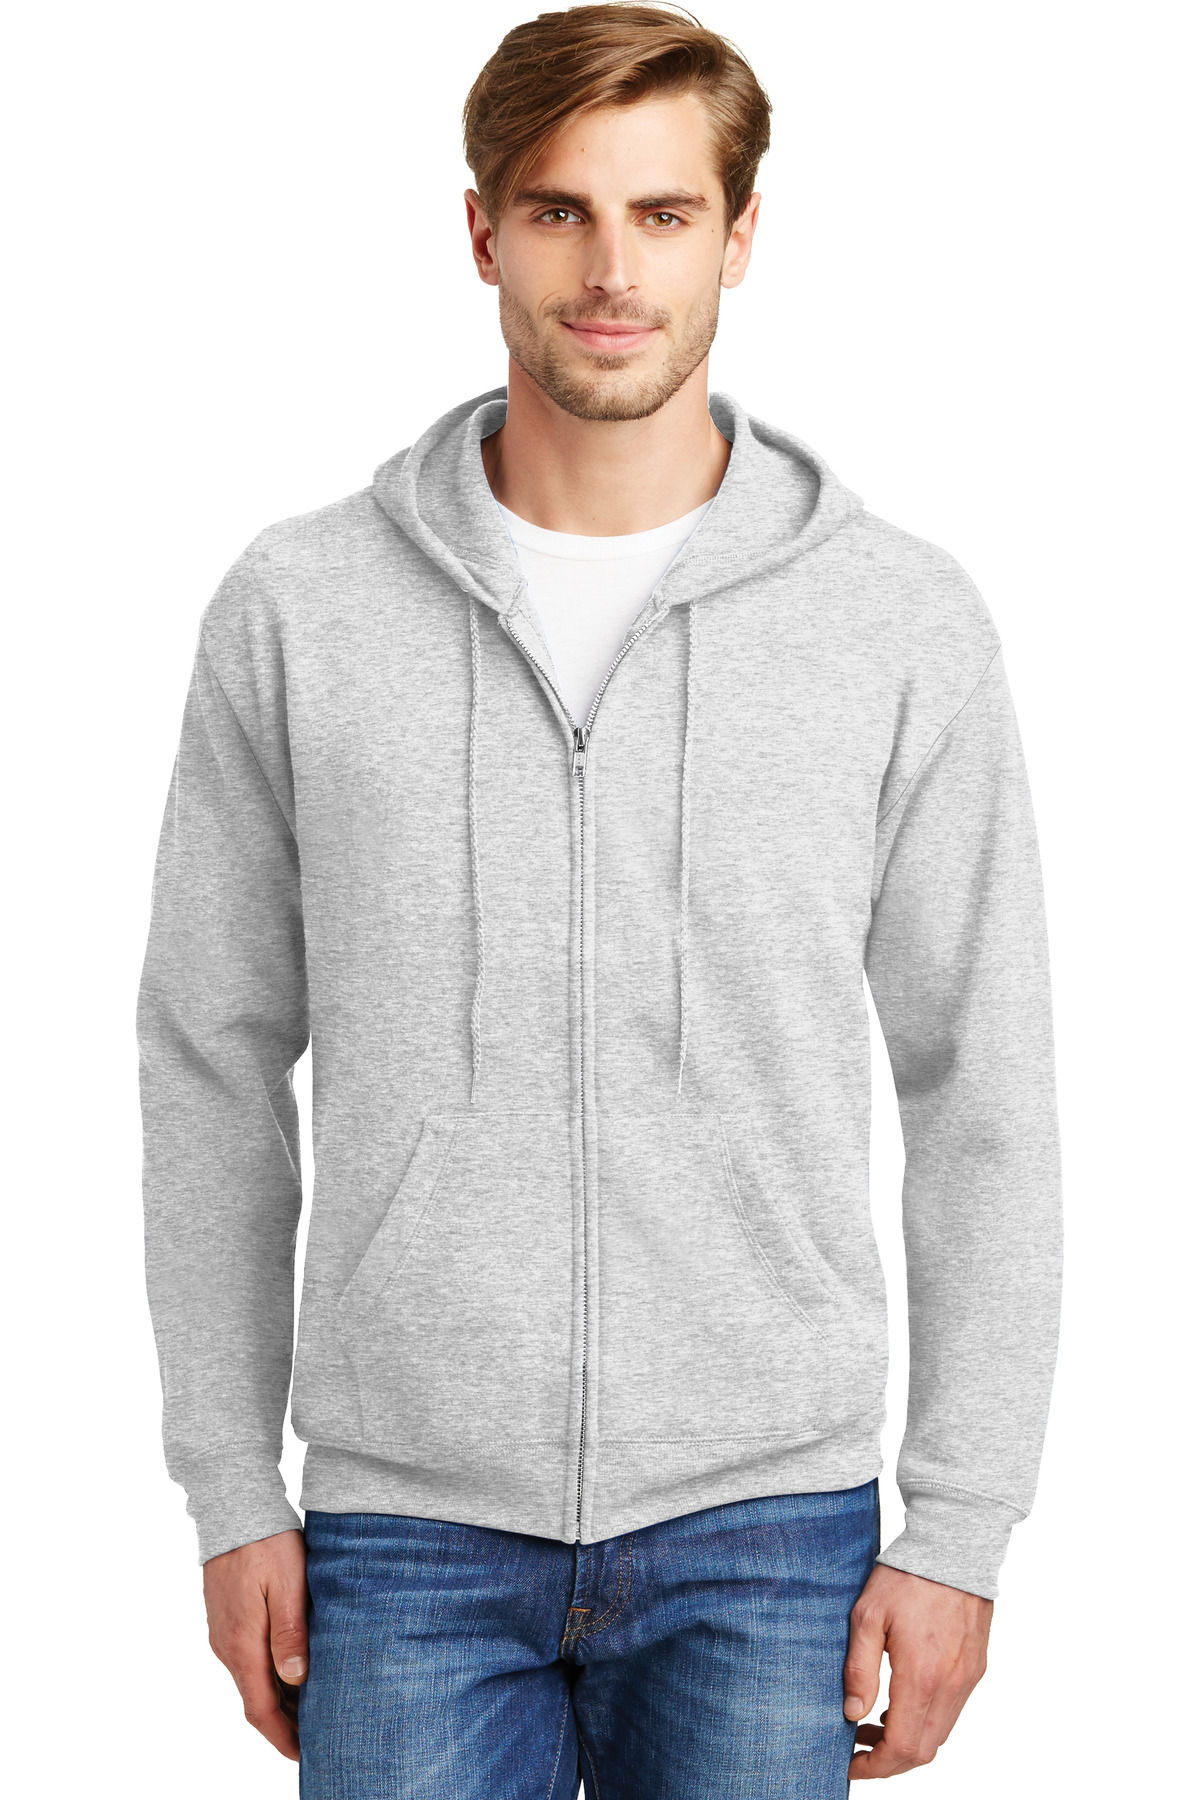 Hanes - EcoSmart Full-Zip Hooded Sweatshirt - P180